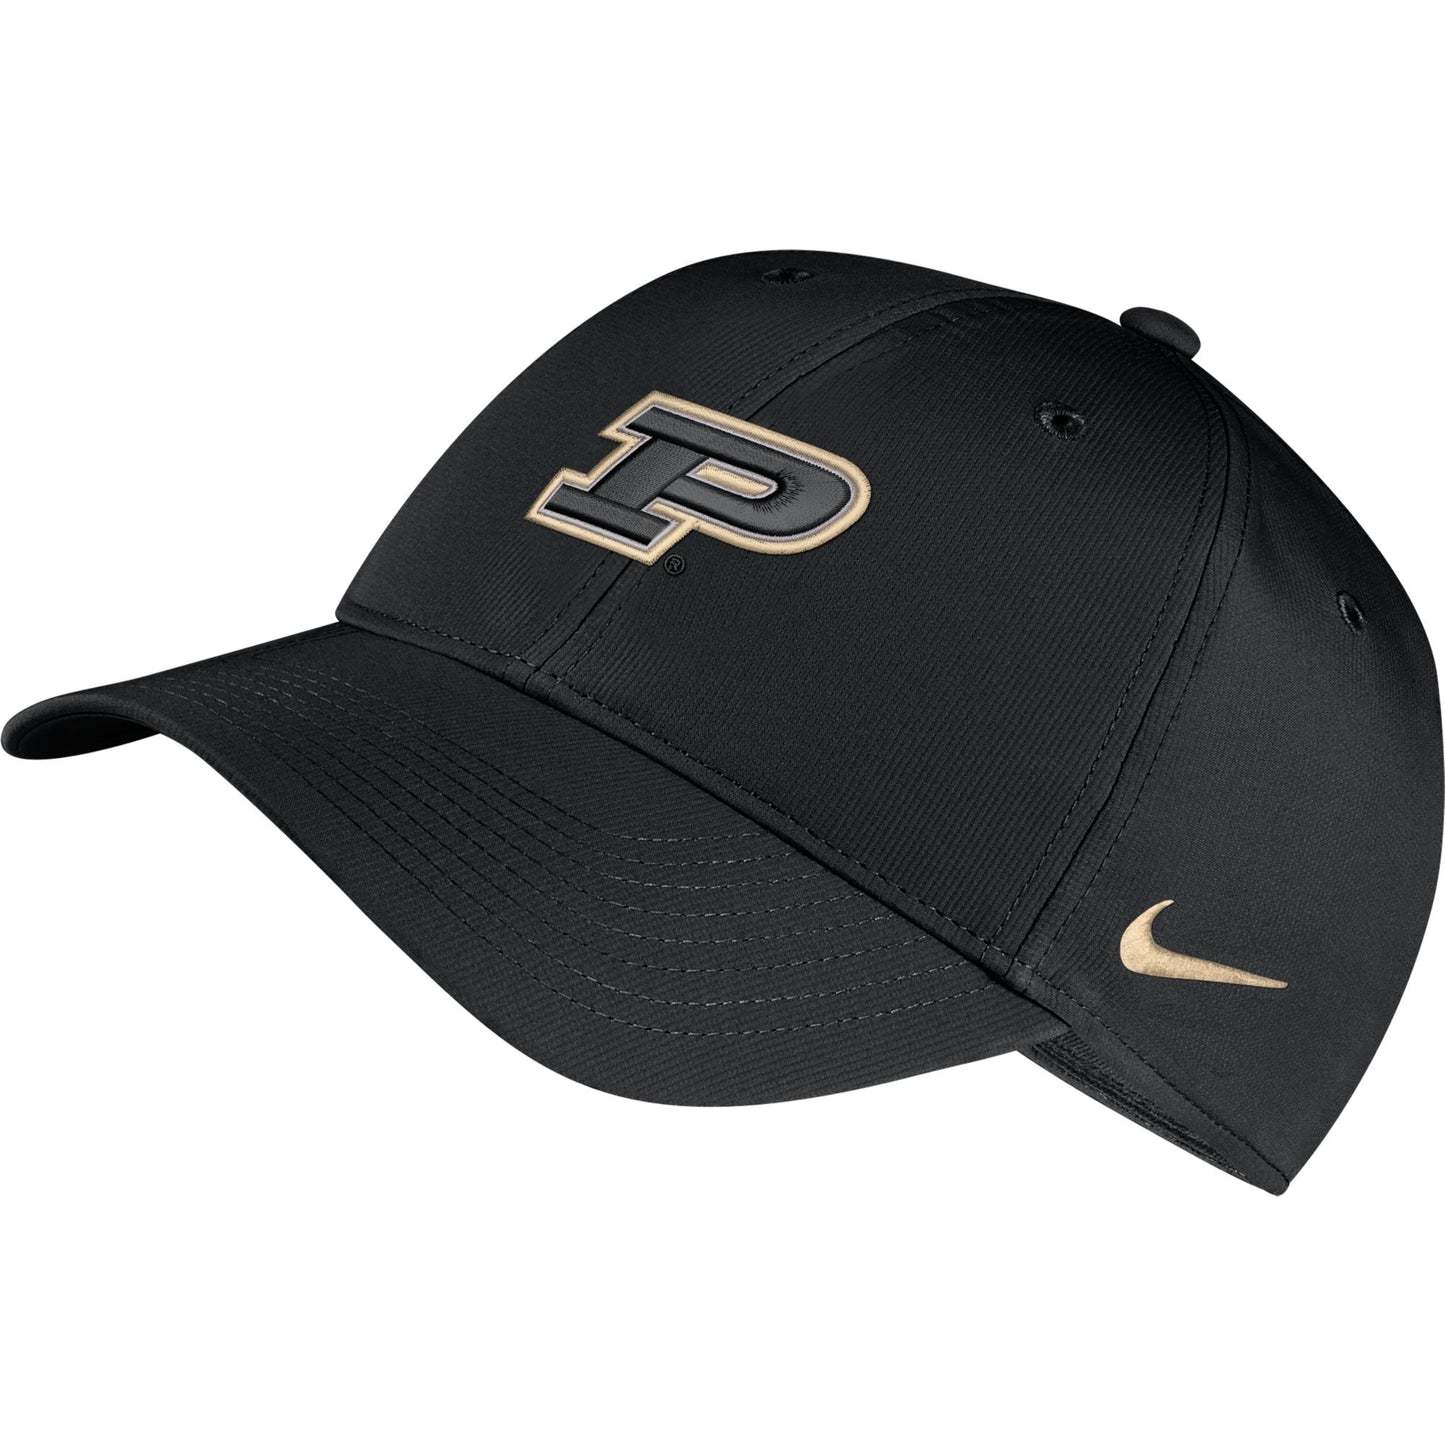 Purdue Boilermakers Nike Legacy 91 Logo Performance Adjustable Hat -Black